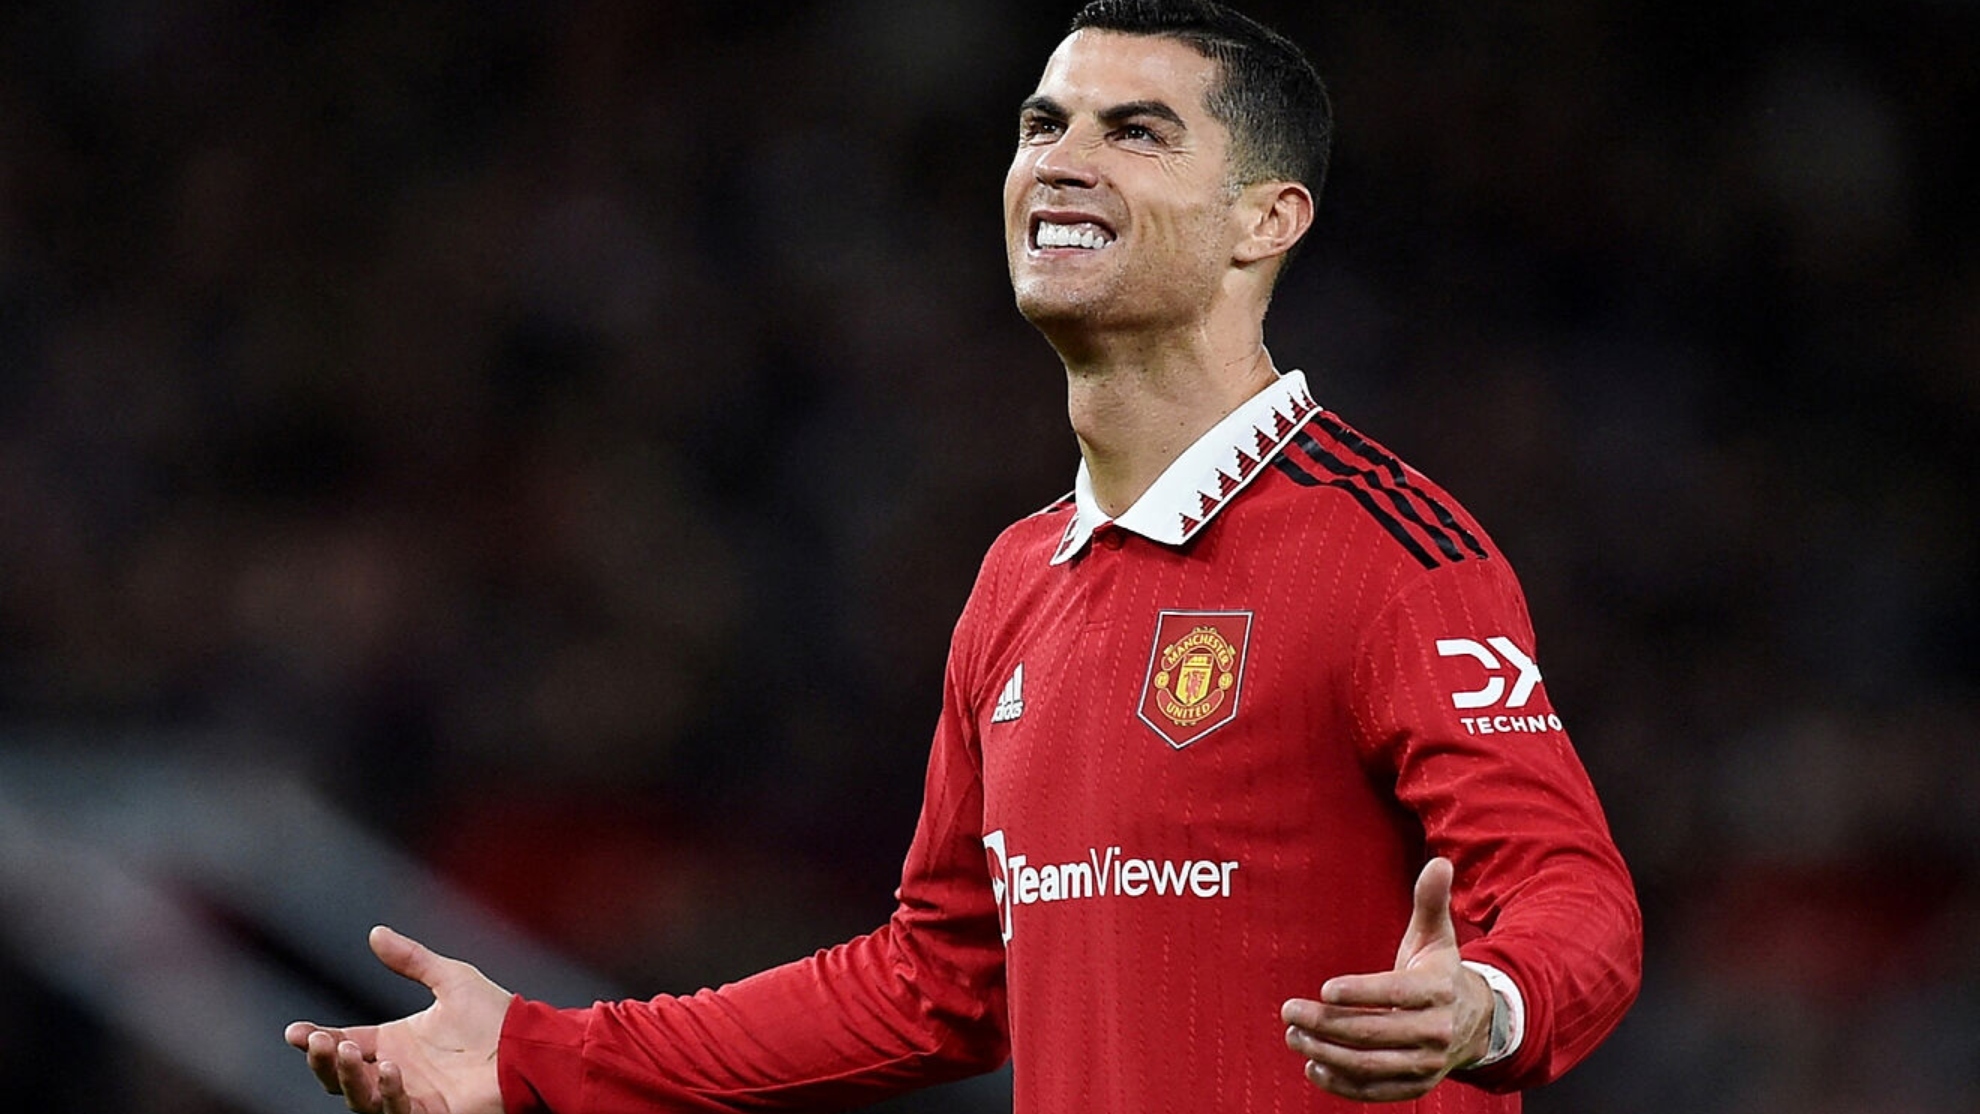 La dura acusación contra Cristiano Ronaldo: "Con un mes de sueldo podría comprarse..."